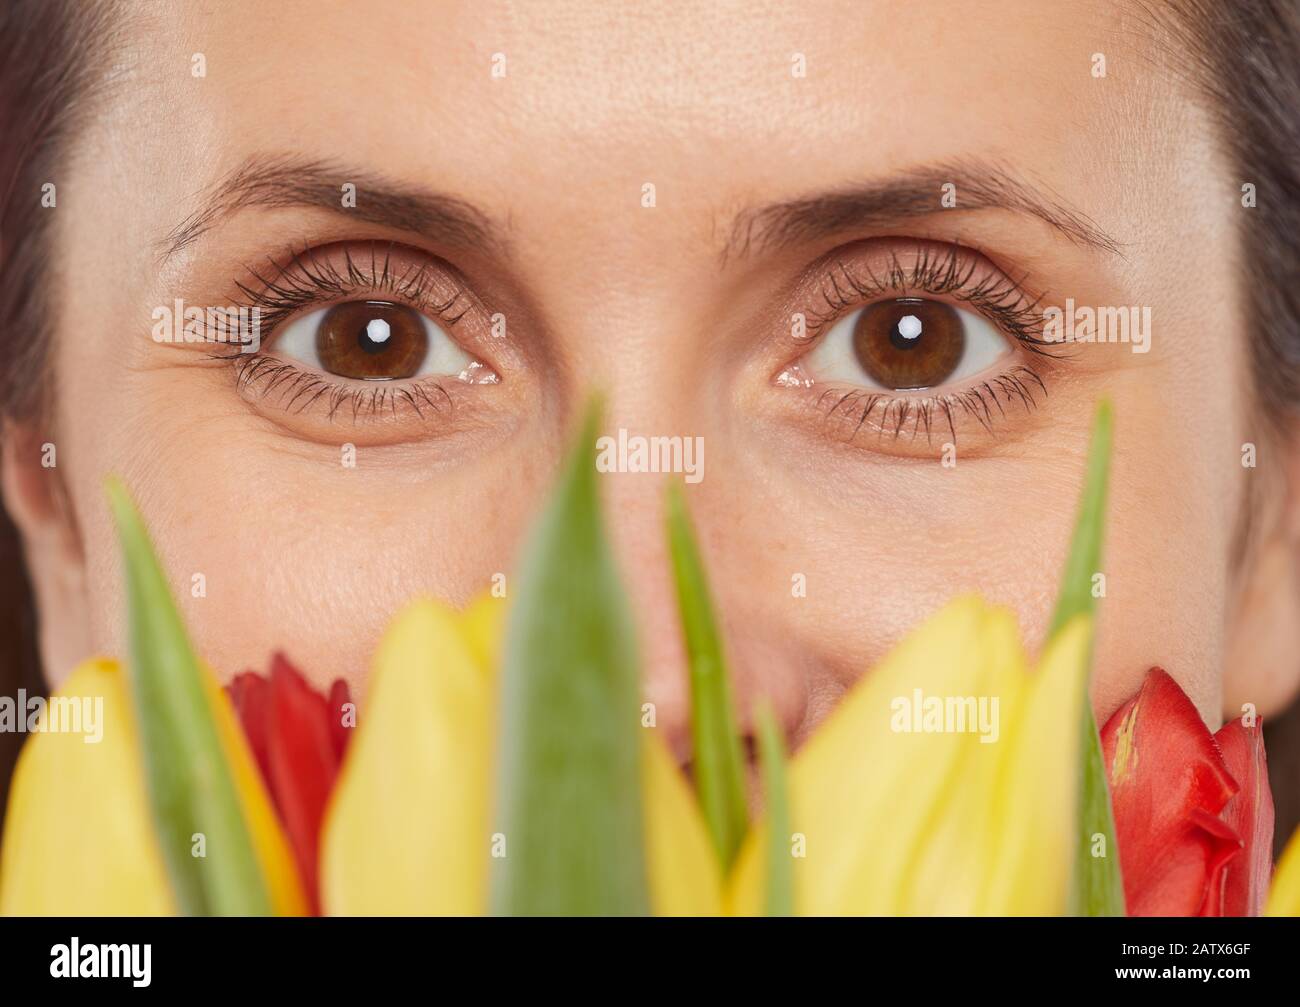 Primo piano del volto femminile con occhi marroni che guardano la fotocamera dietro i fiori Foto Stock